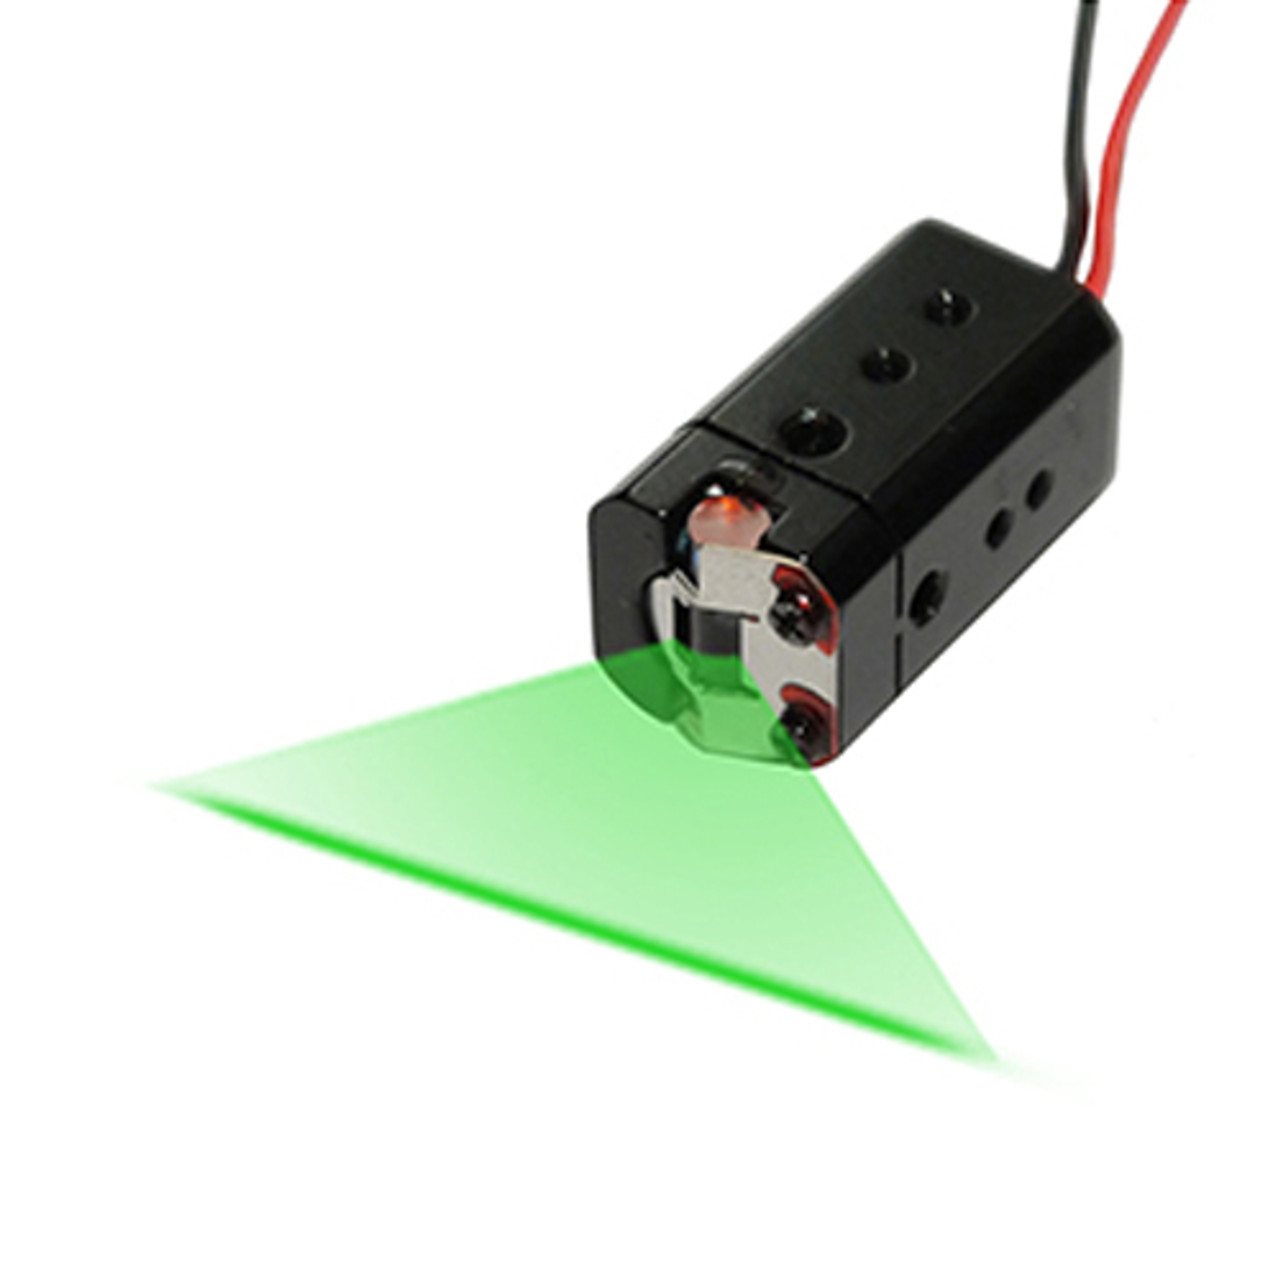 Cross Line Laser - Green Cross Laser Module, VLM-520-29 LPT